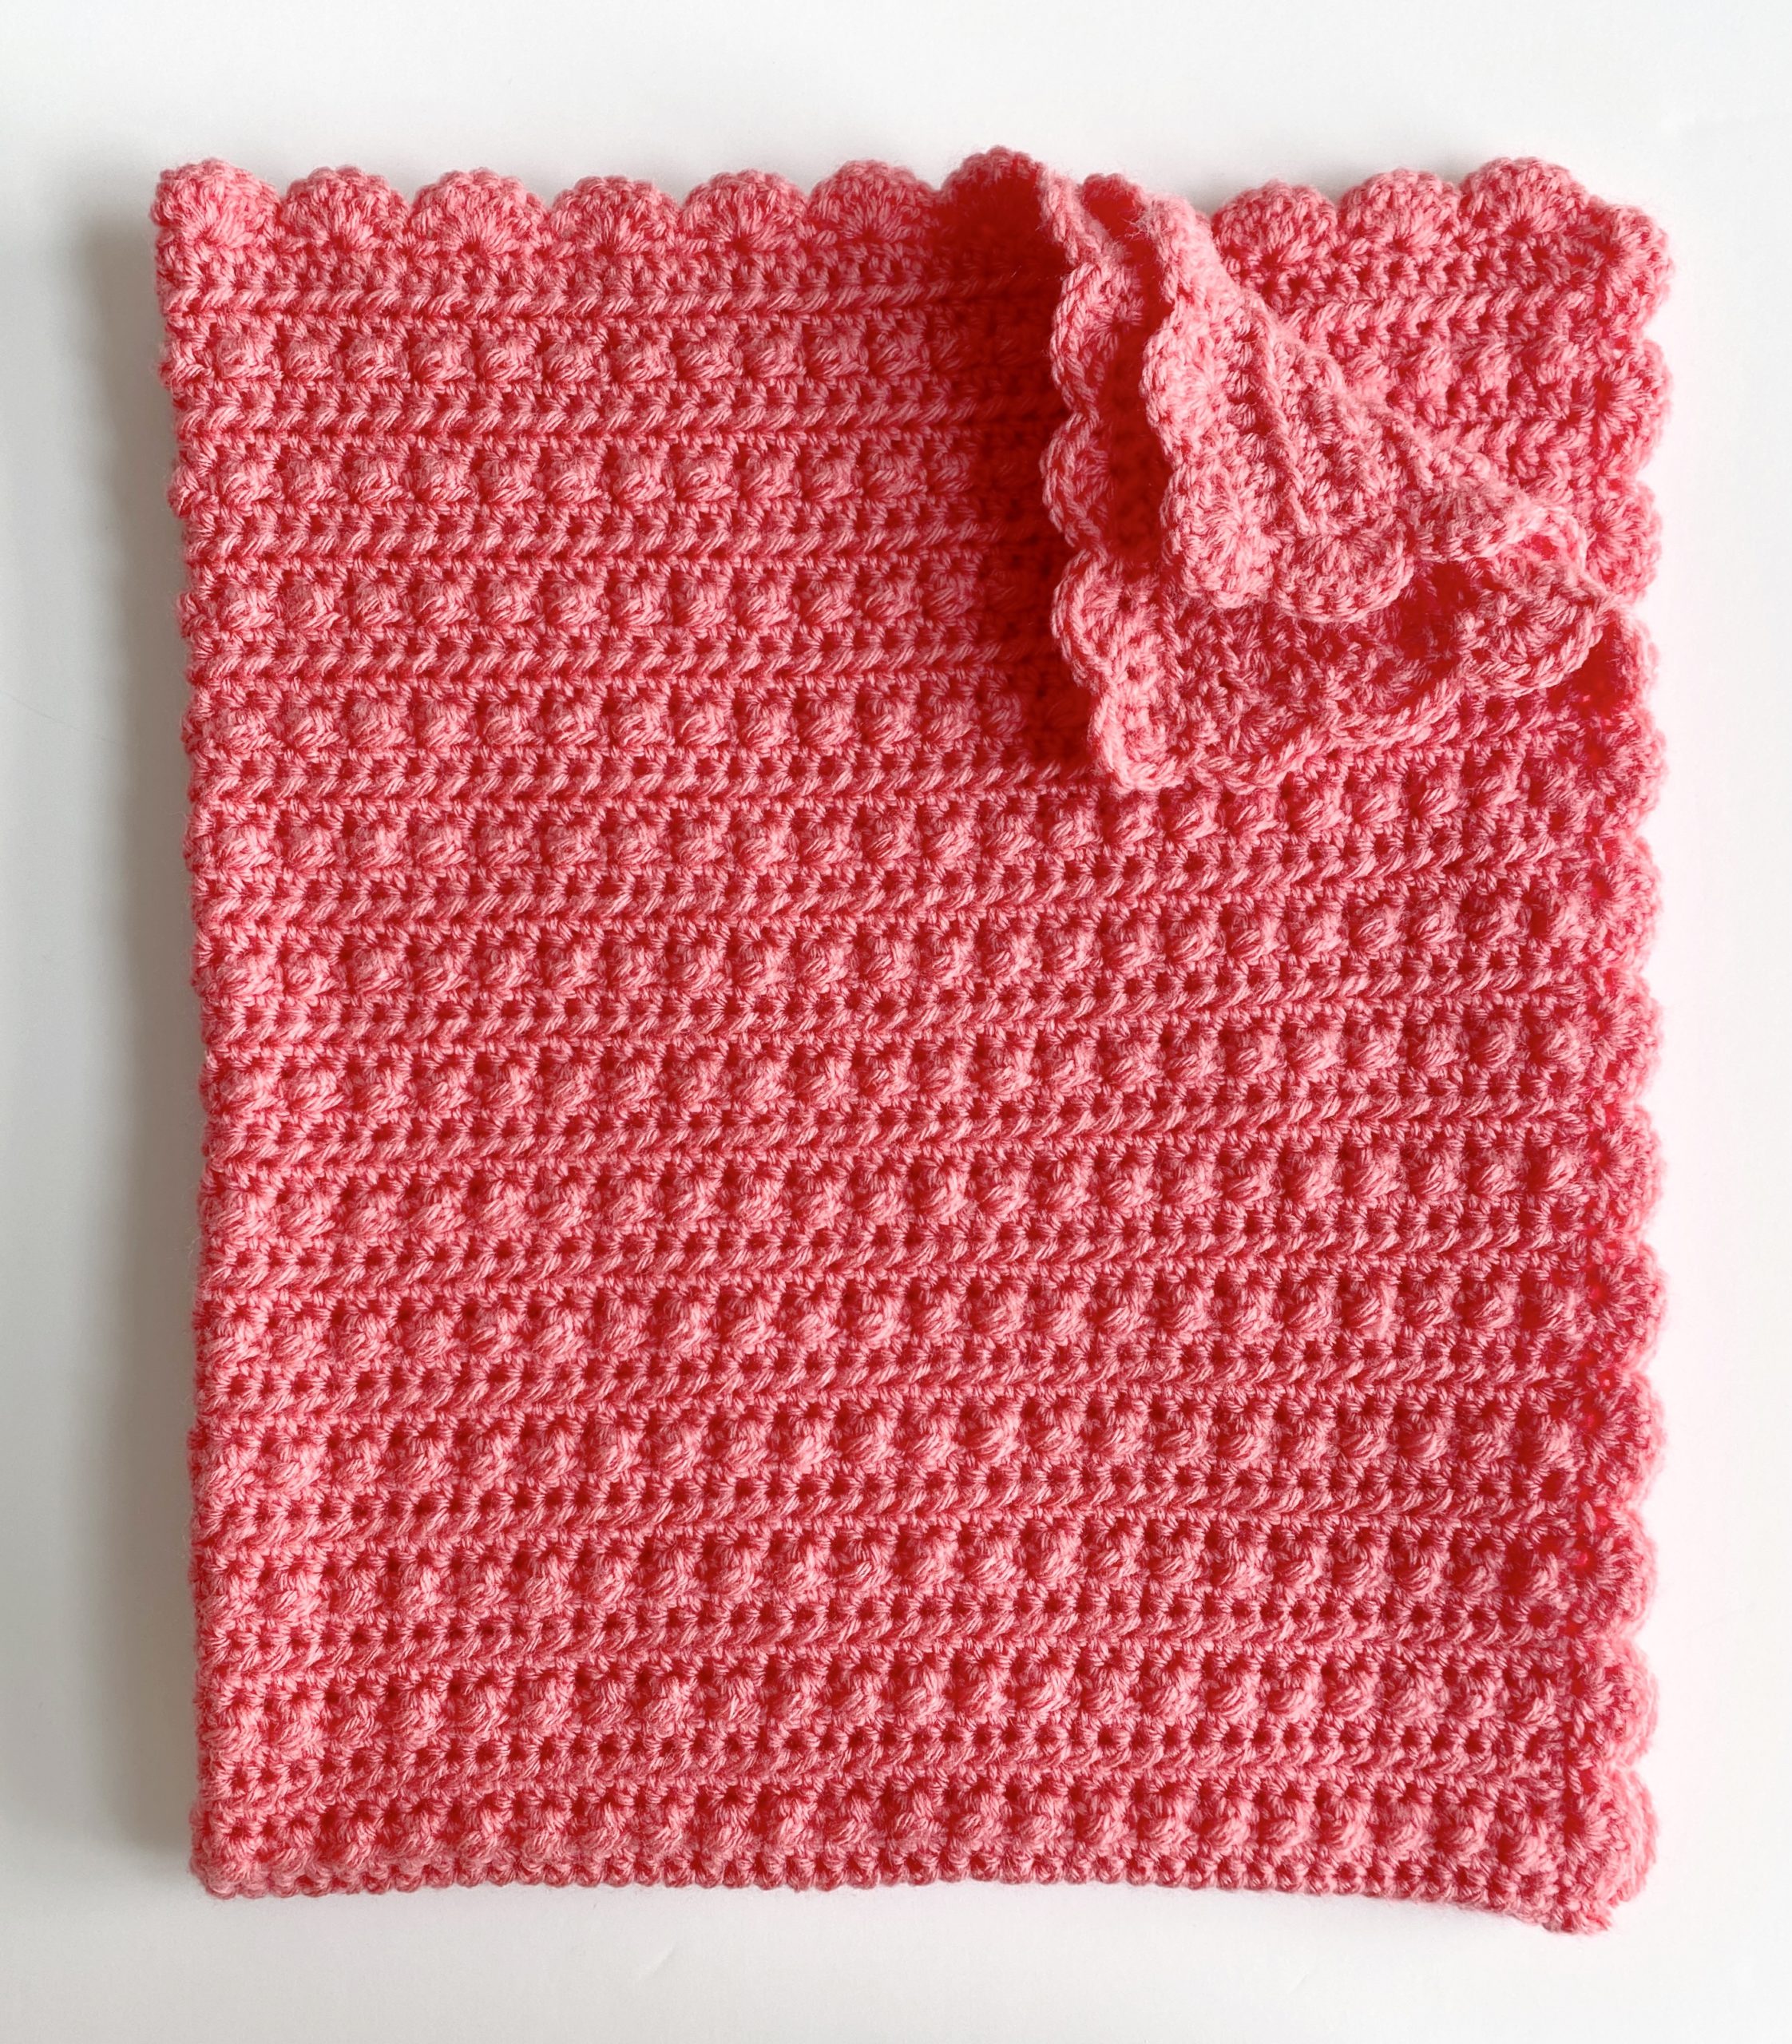 Crochet Berry Pattern - A free crochet pattern 